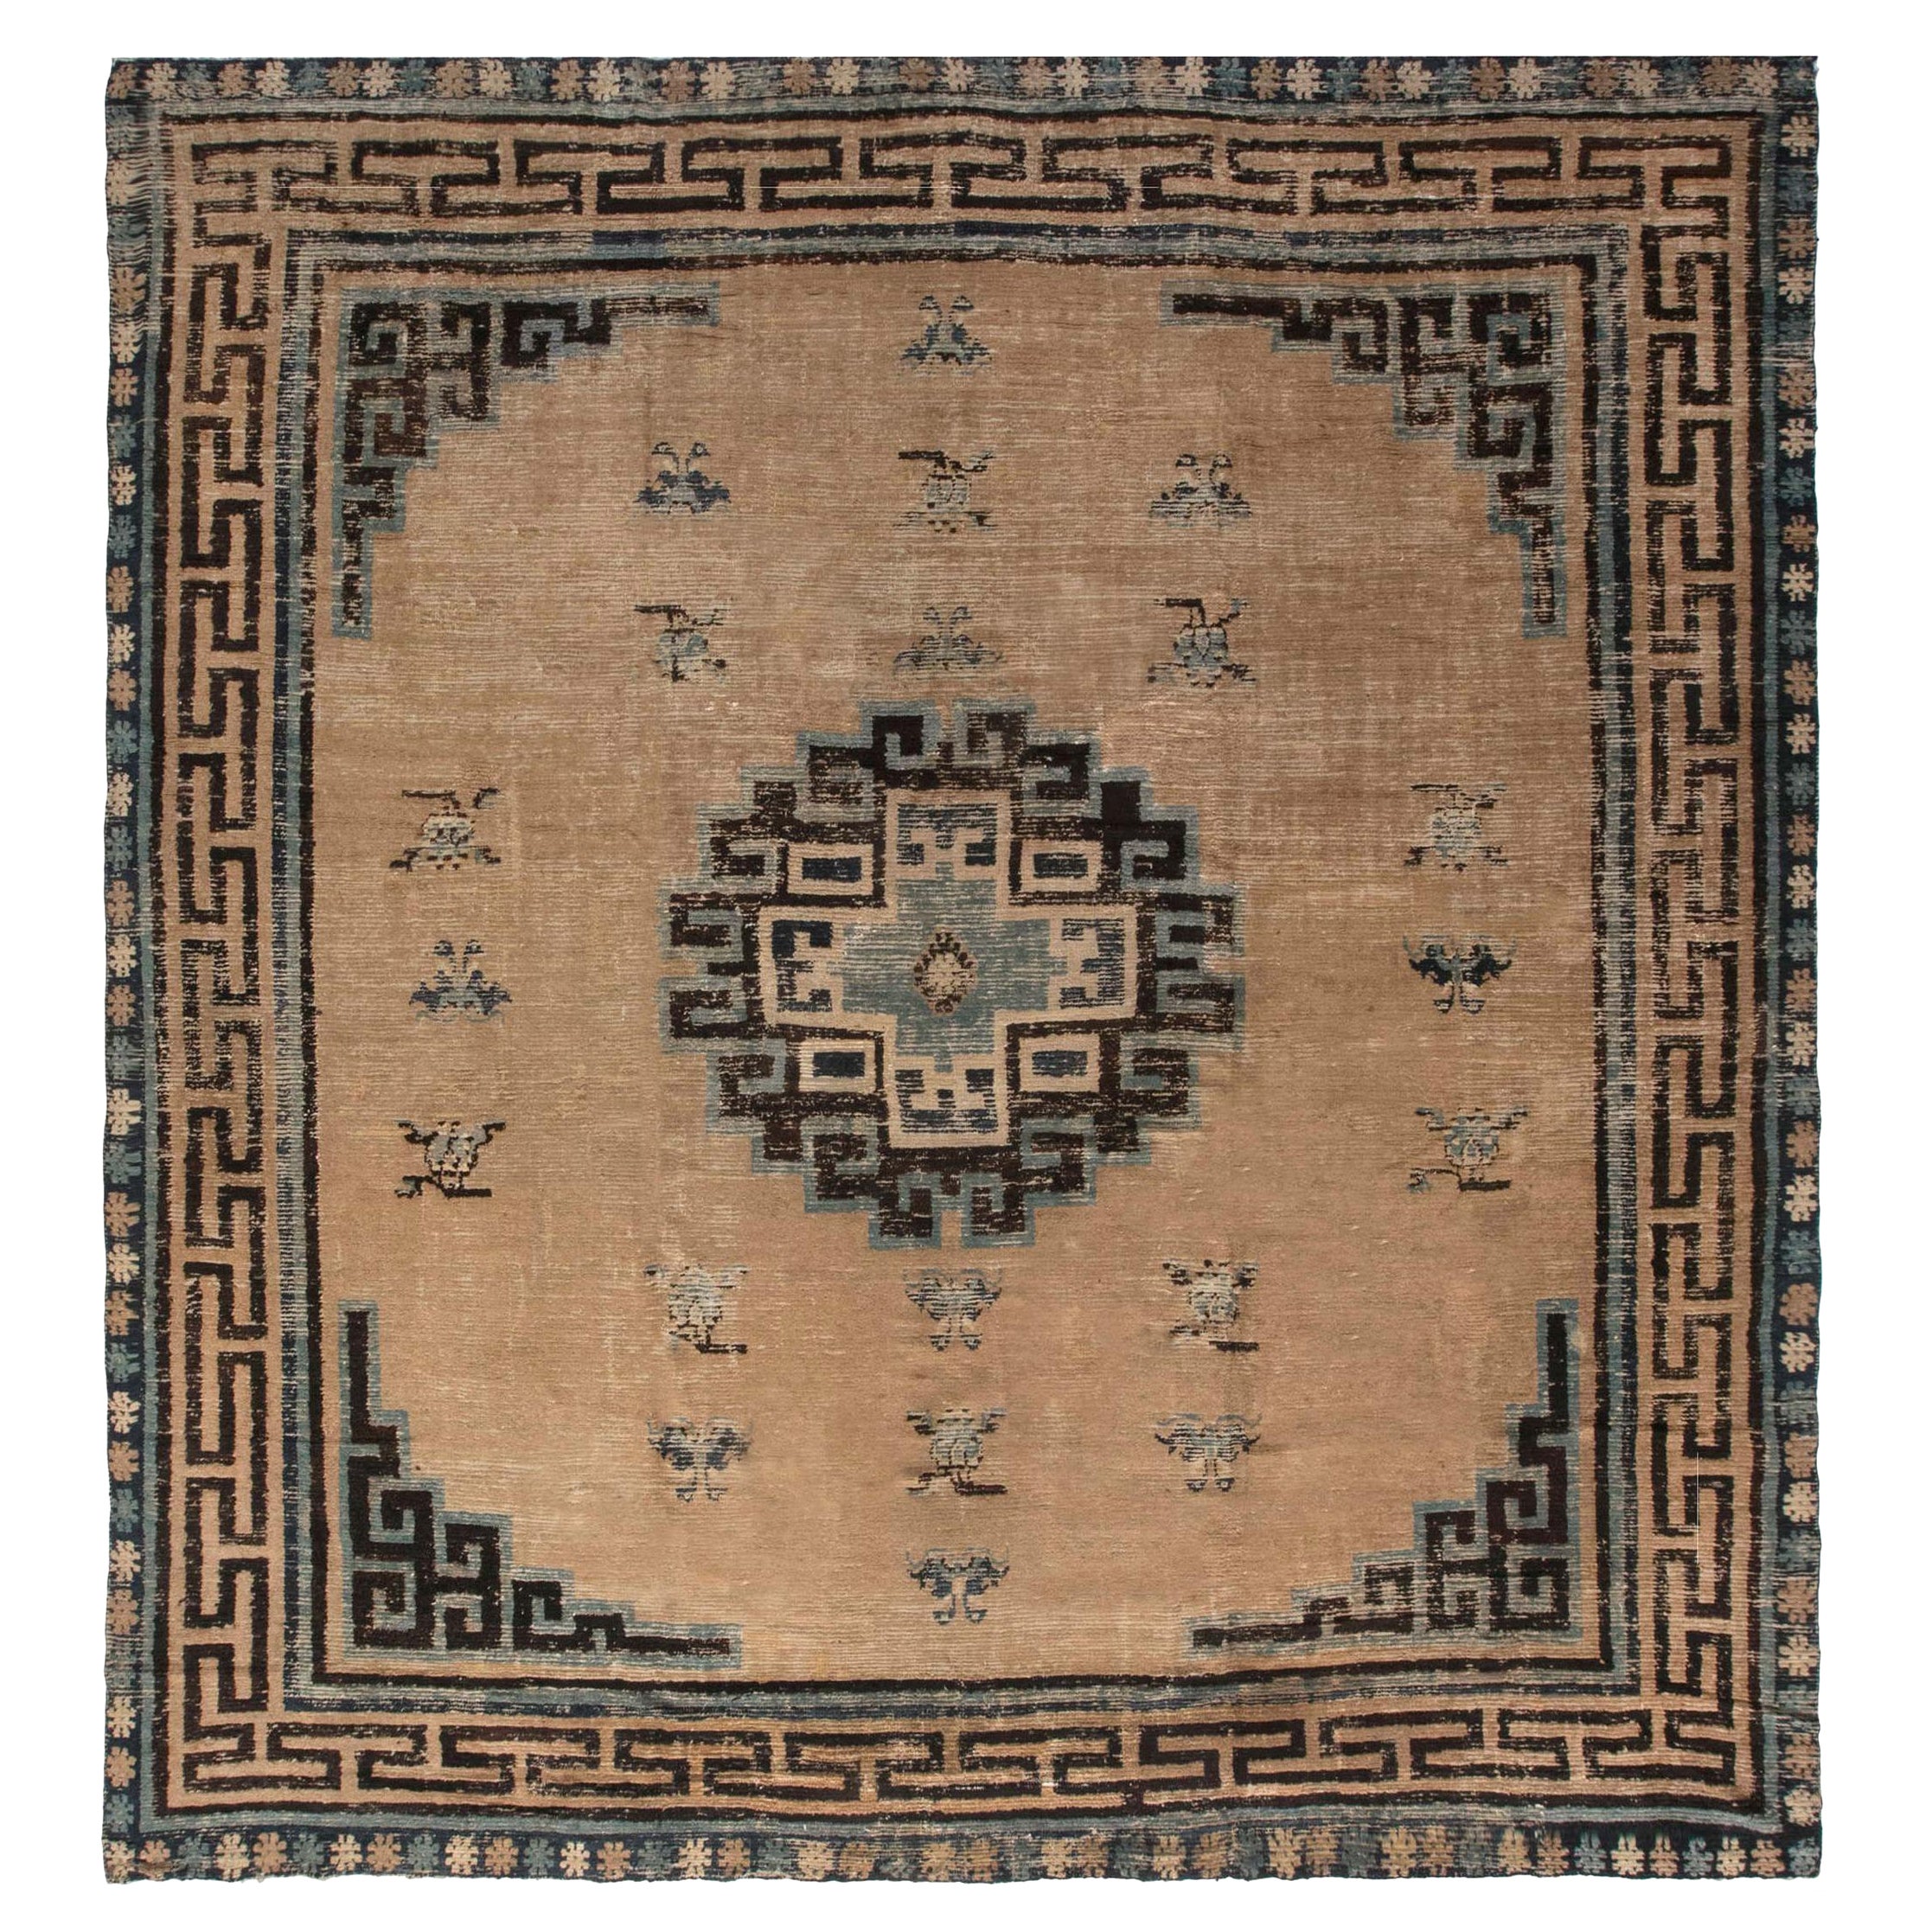 Ancien tapis de laine tissé à la main en Chine mongole